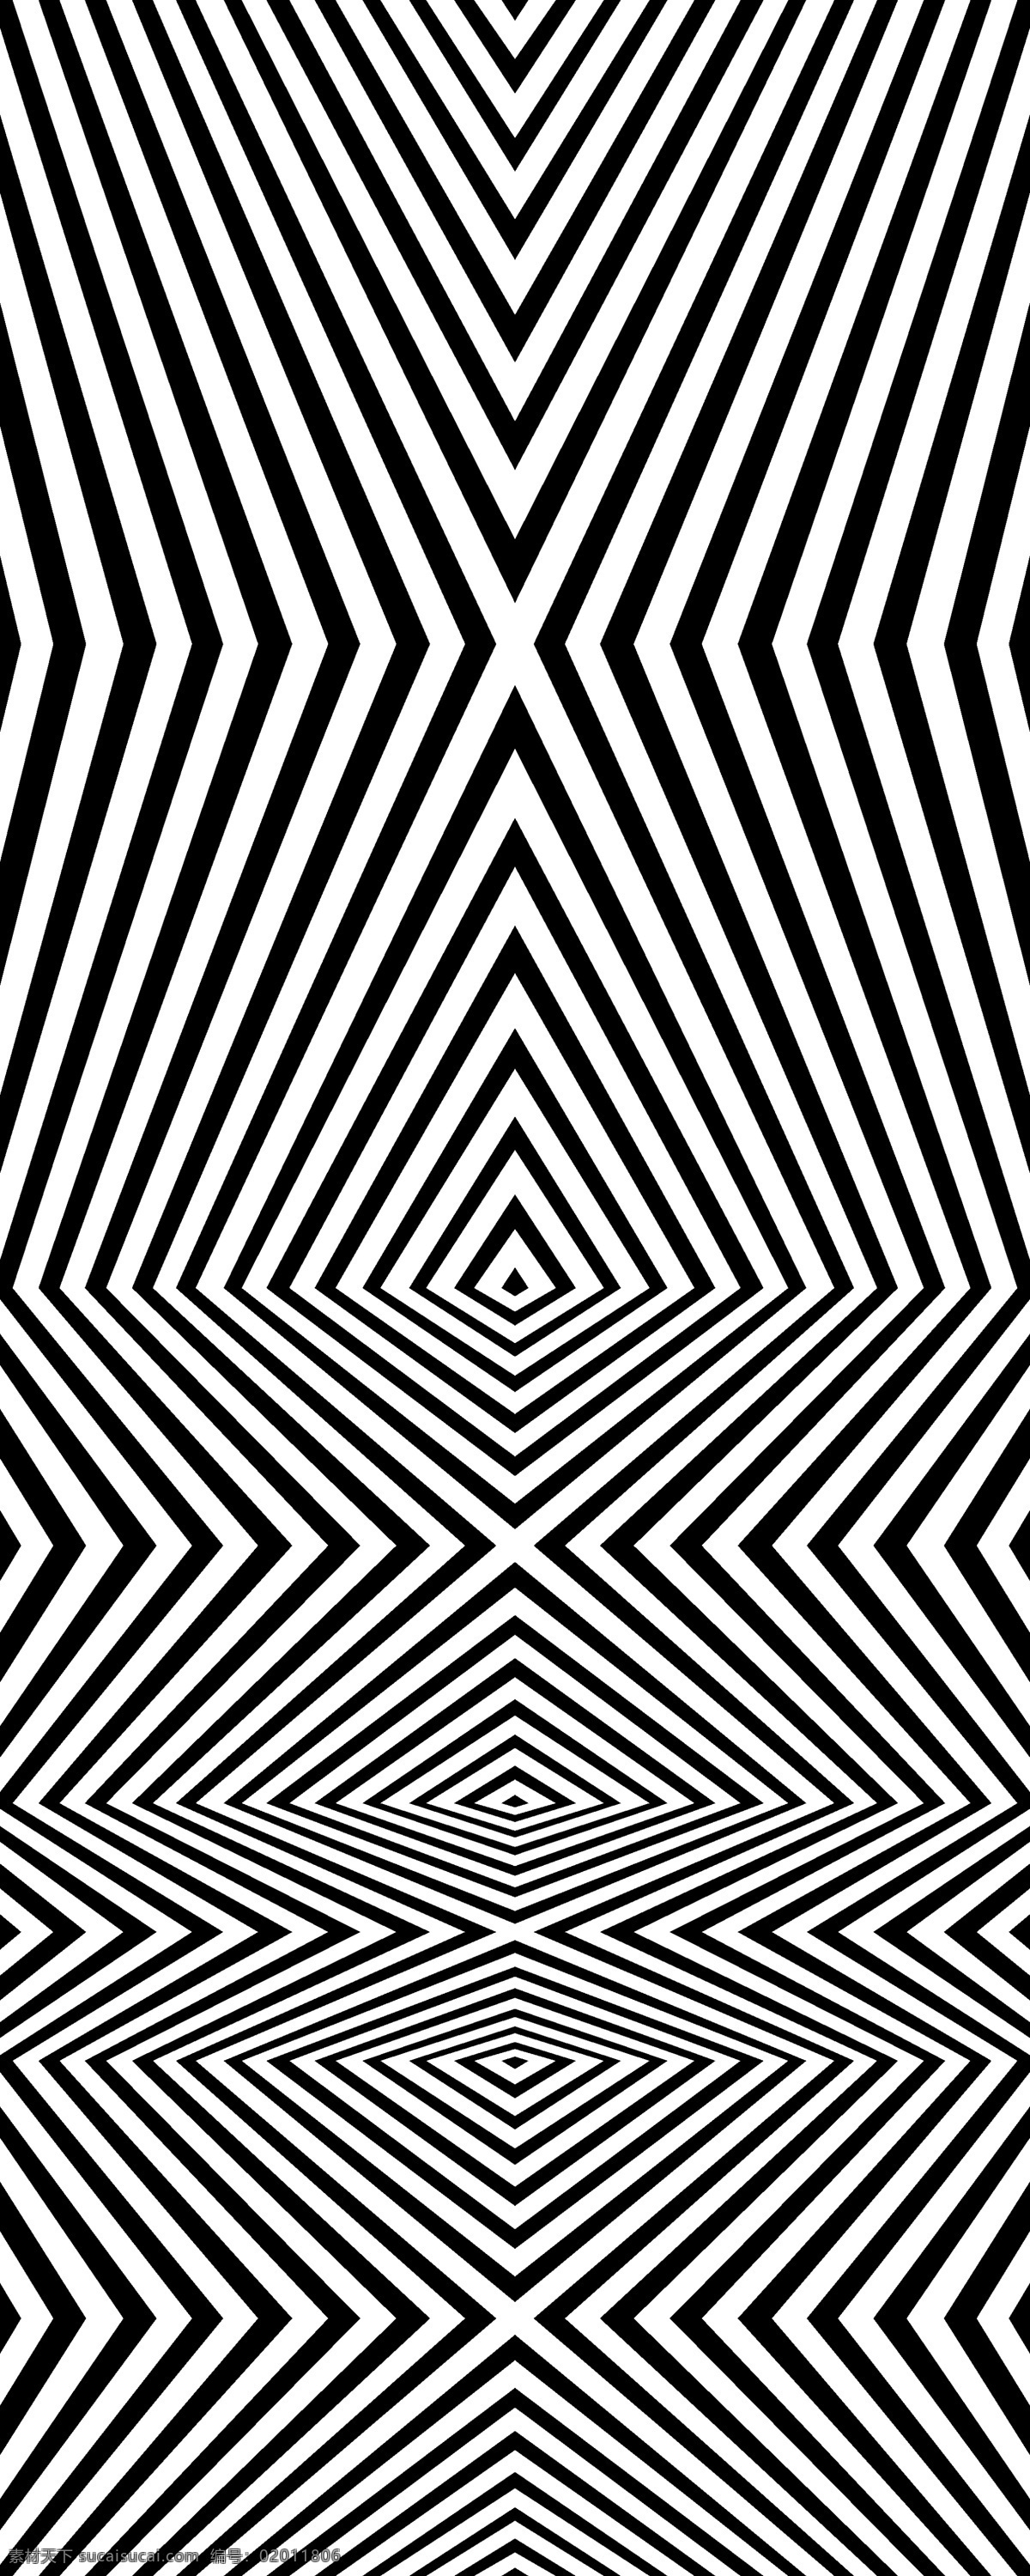 菱形视觉构成 几何 构成 错觉 视觉错乱 黑白 条格 条框 图案 视觉效果 眼花 视觉 抽象底纹 底纹边框